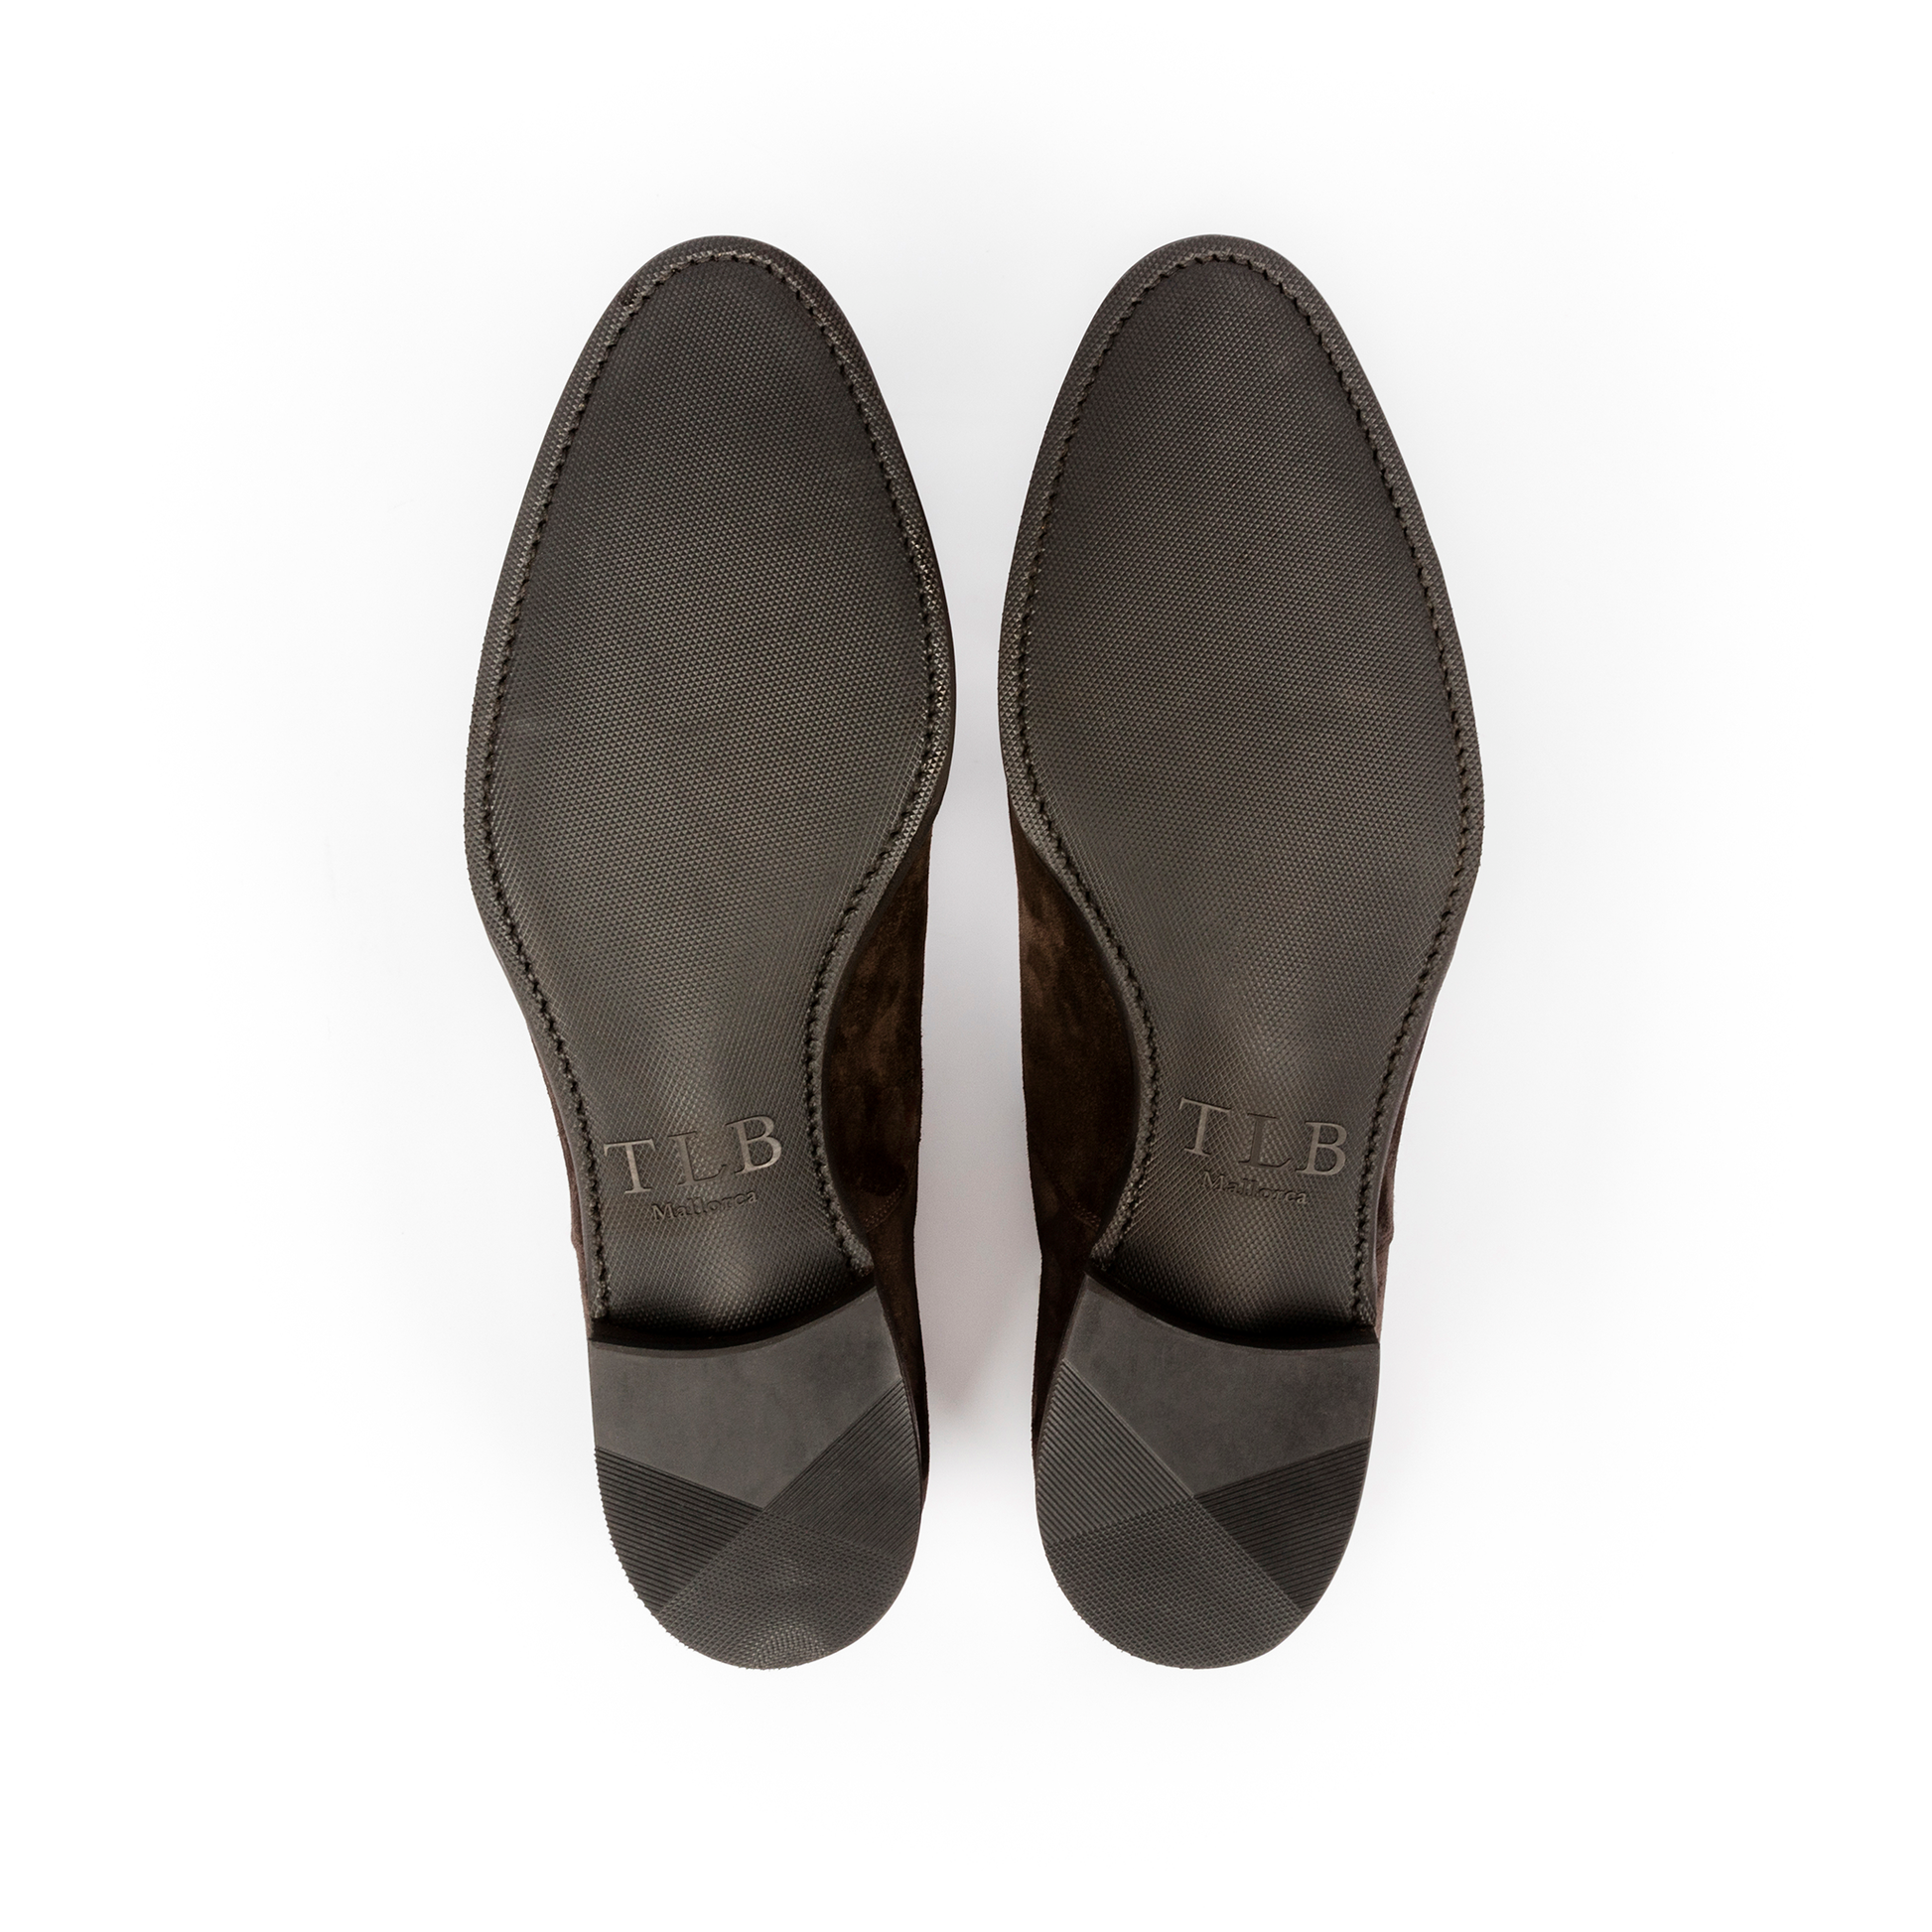 TLB Mallorca leather shoes 135 / VELAZQUEZ / HATCH GRAIN TAN